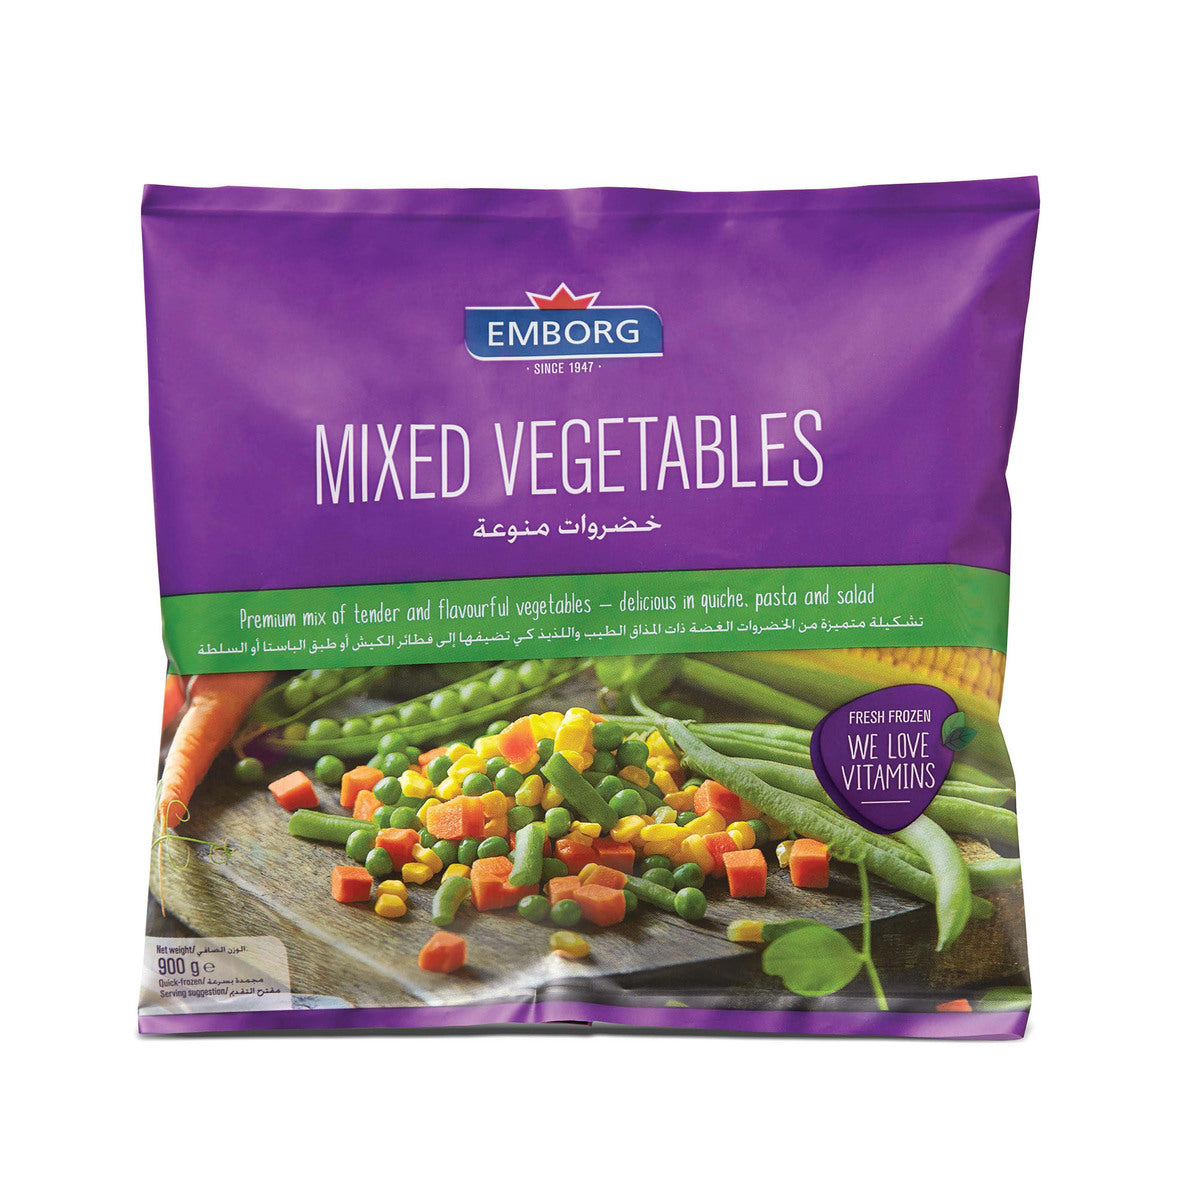 EMBORG Mixed Vegetables, 900g